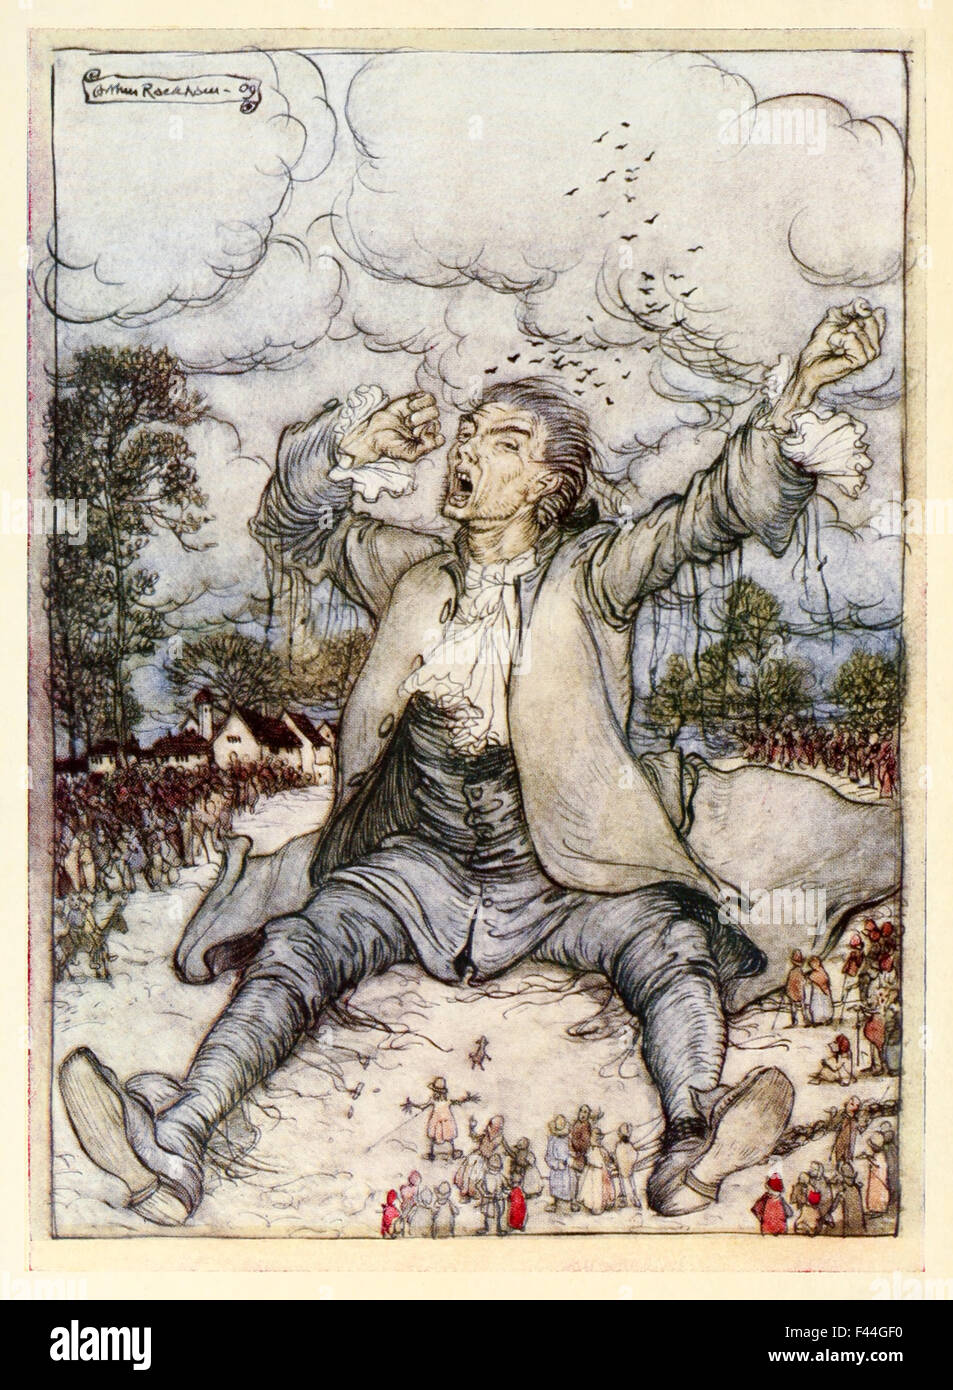 'Gulliver release from the Strings Rises and Strings self' de 'part I : a Voyage to Lilliput' dans 'Gulliver's Travels' de Jonathan Swift (1667-1745), illustration par Arthur Rackham (1867-1939). Photographié à partir d'une édition de 1909. Voir la description pour plus d'informations. Banque D'Images